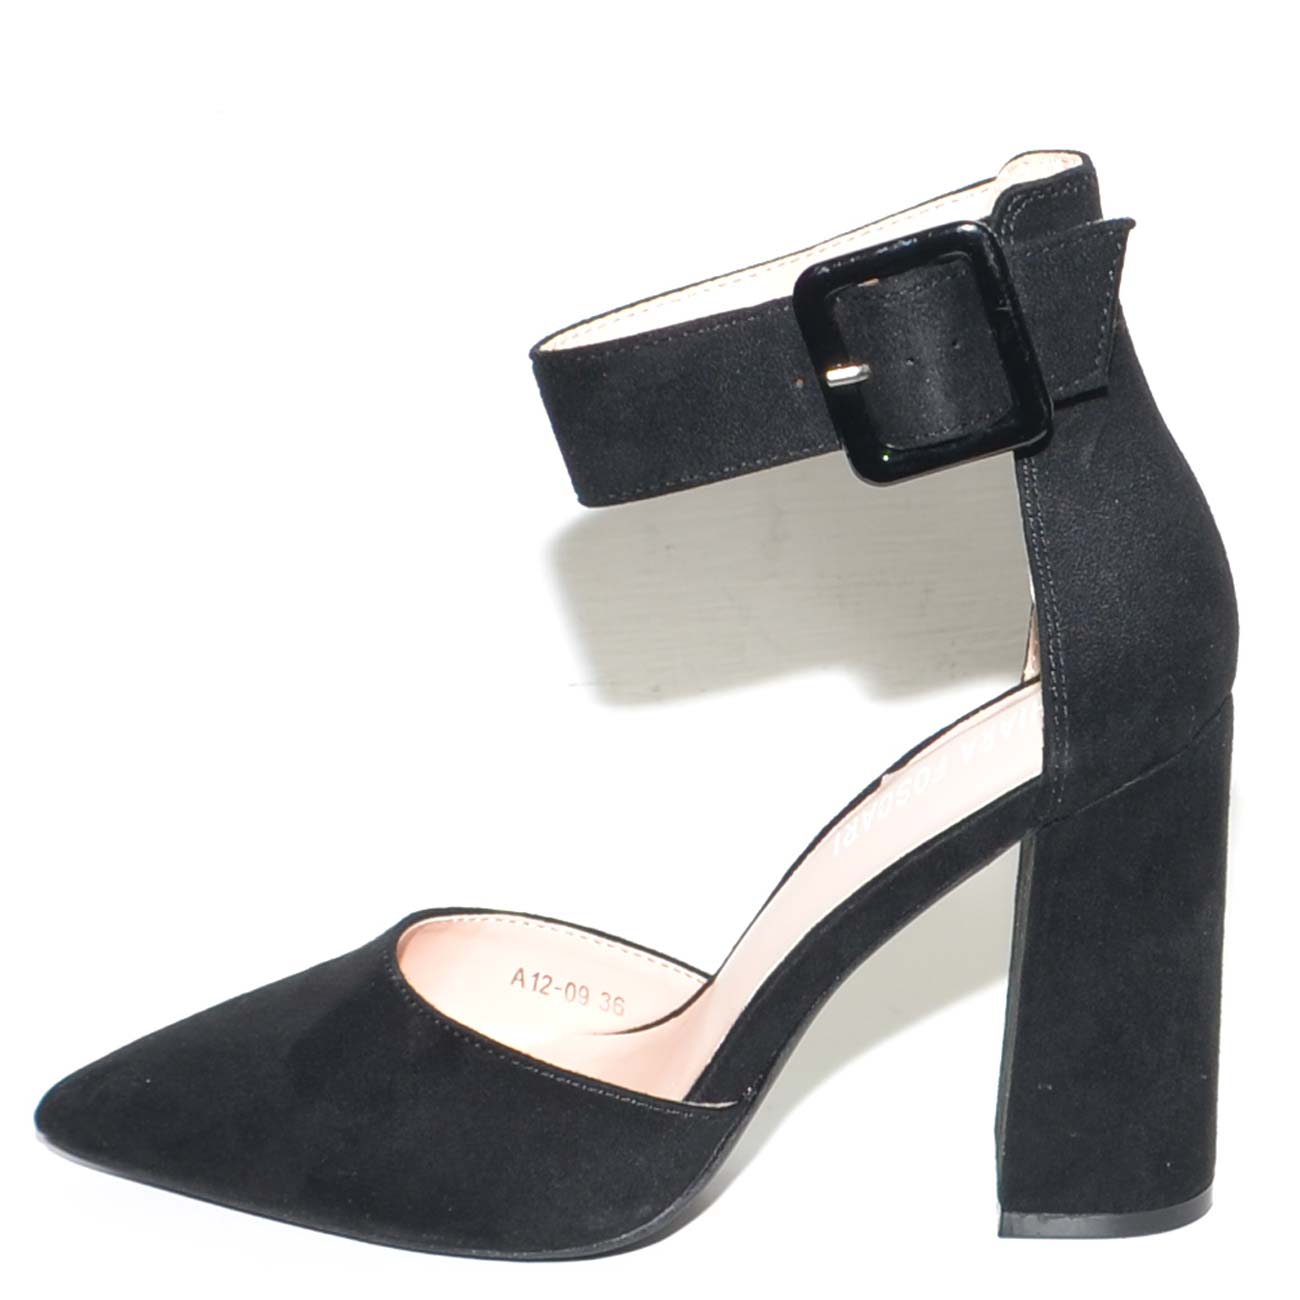 Decollete donna nero in camoscio a punta con tacco largo 10 cm e cinturone  alla caviglia linea basic glamour donna d�collet� Malu shoes | MaluShoes